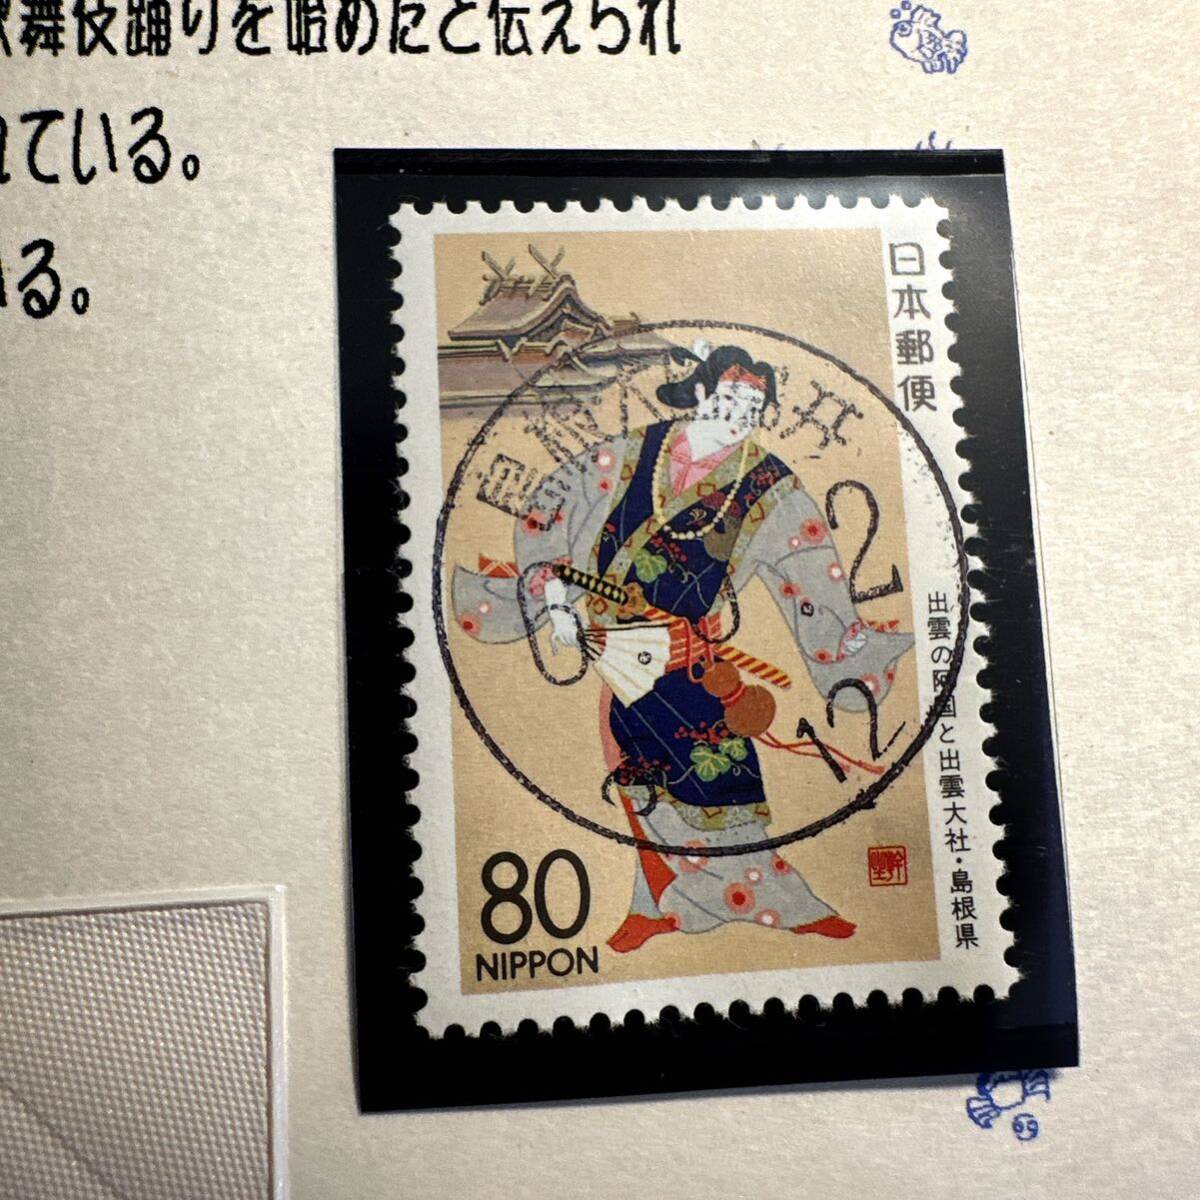 使用済み切手まとめ 丸い印付き 紙貼り付きあり コレクション品 の画像6